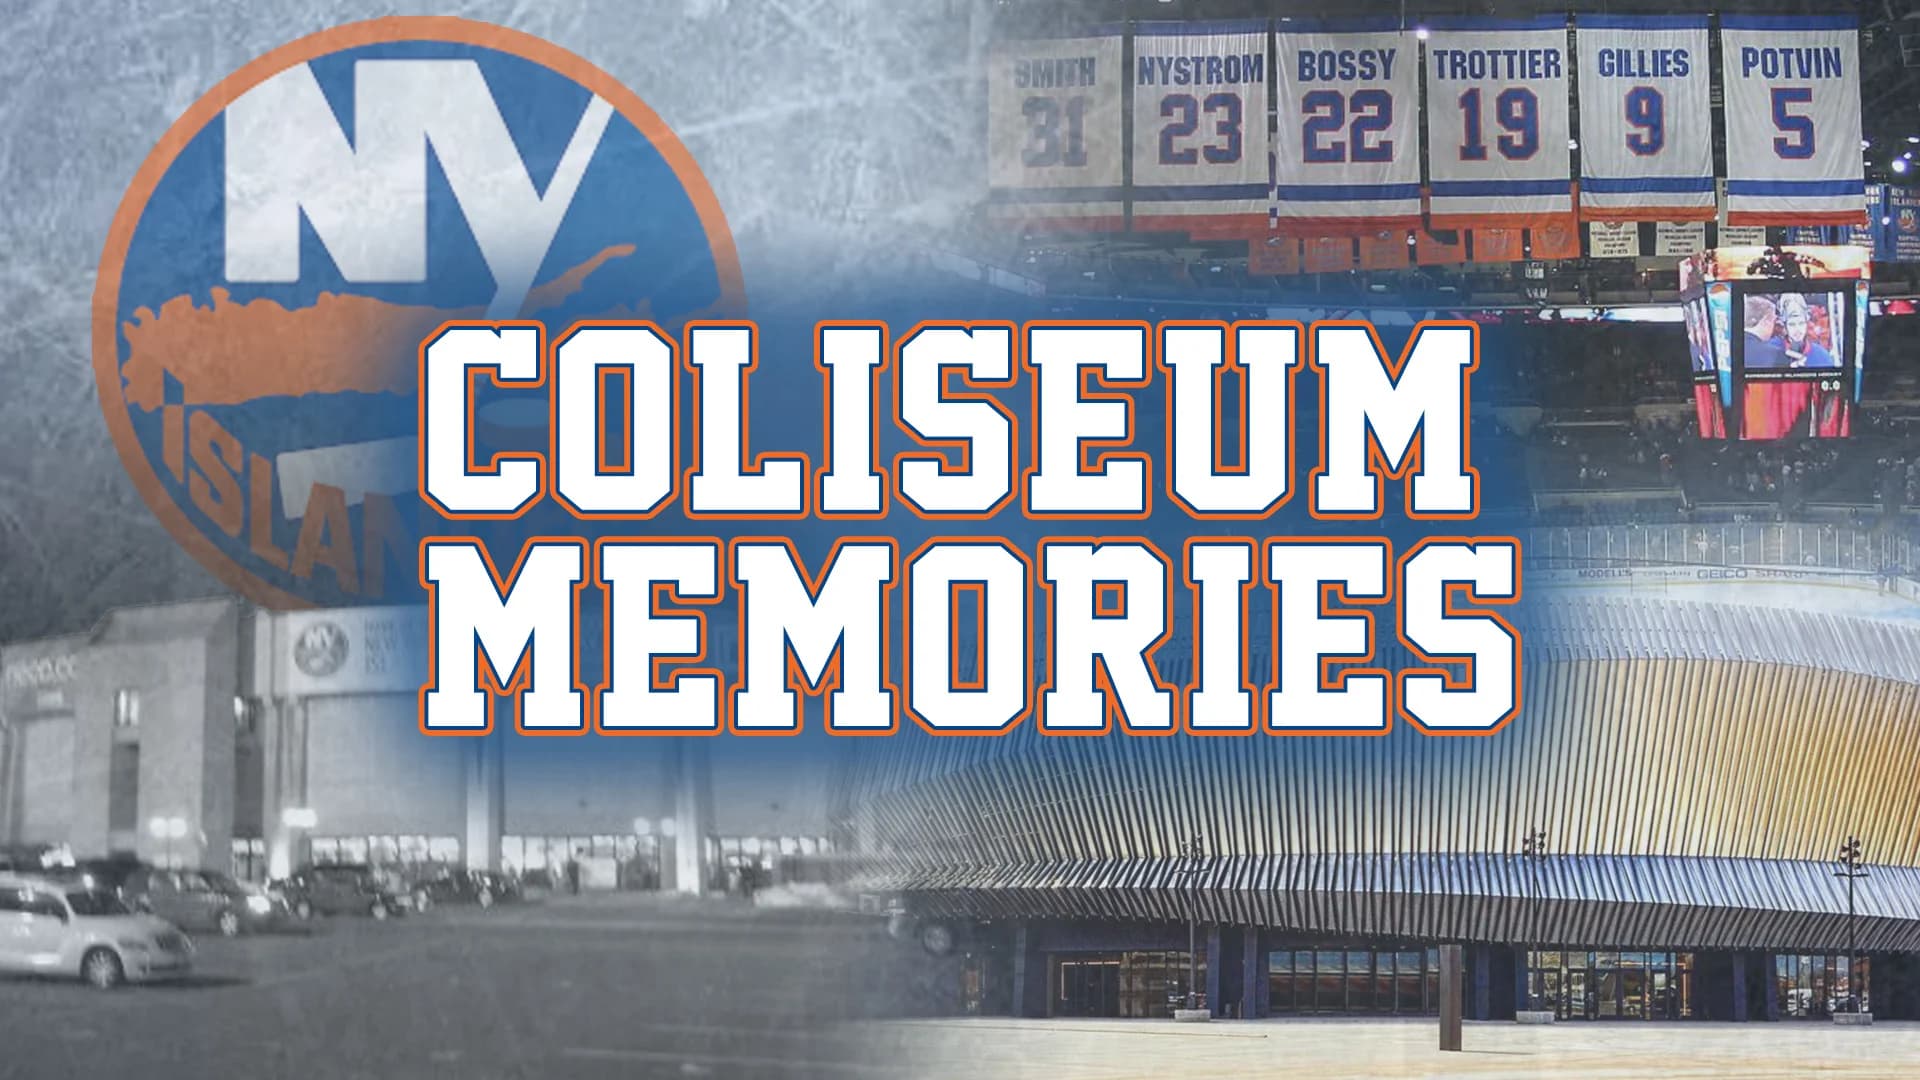 Show us your 'Coliseum Memories'